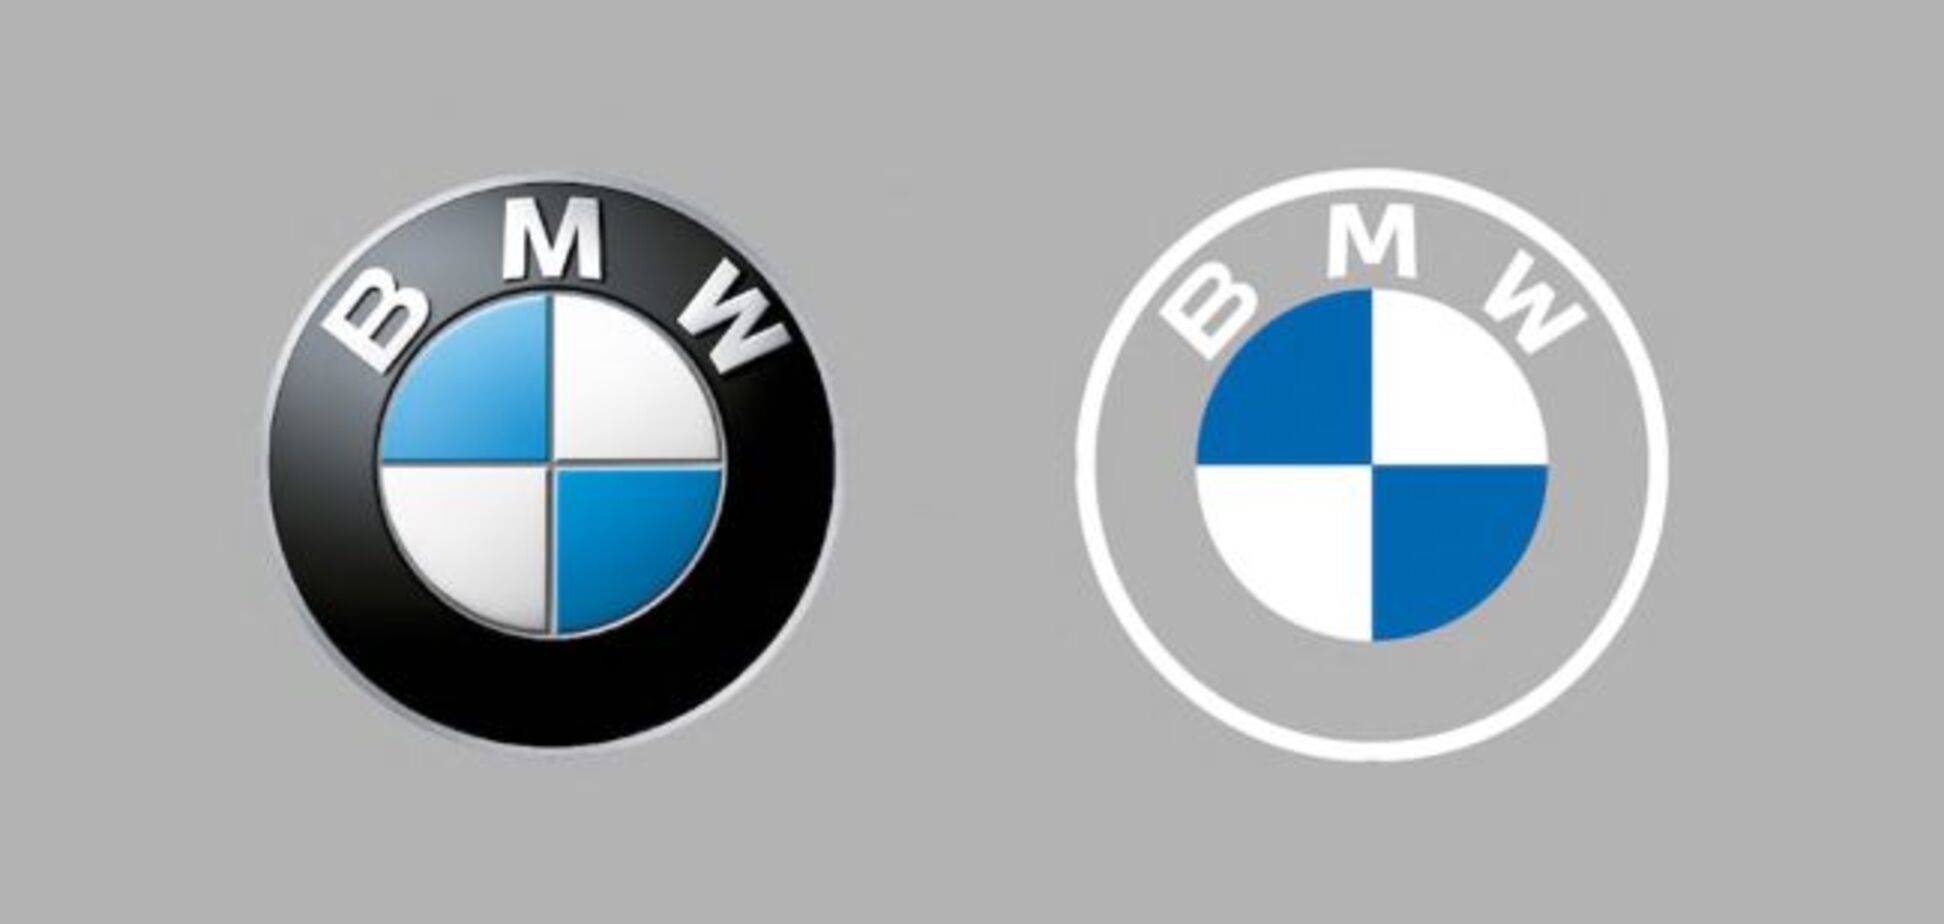 BMW представила свой новый логотип. Но есть нюанс